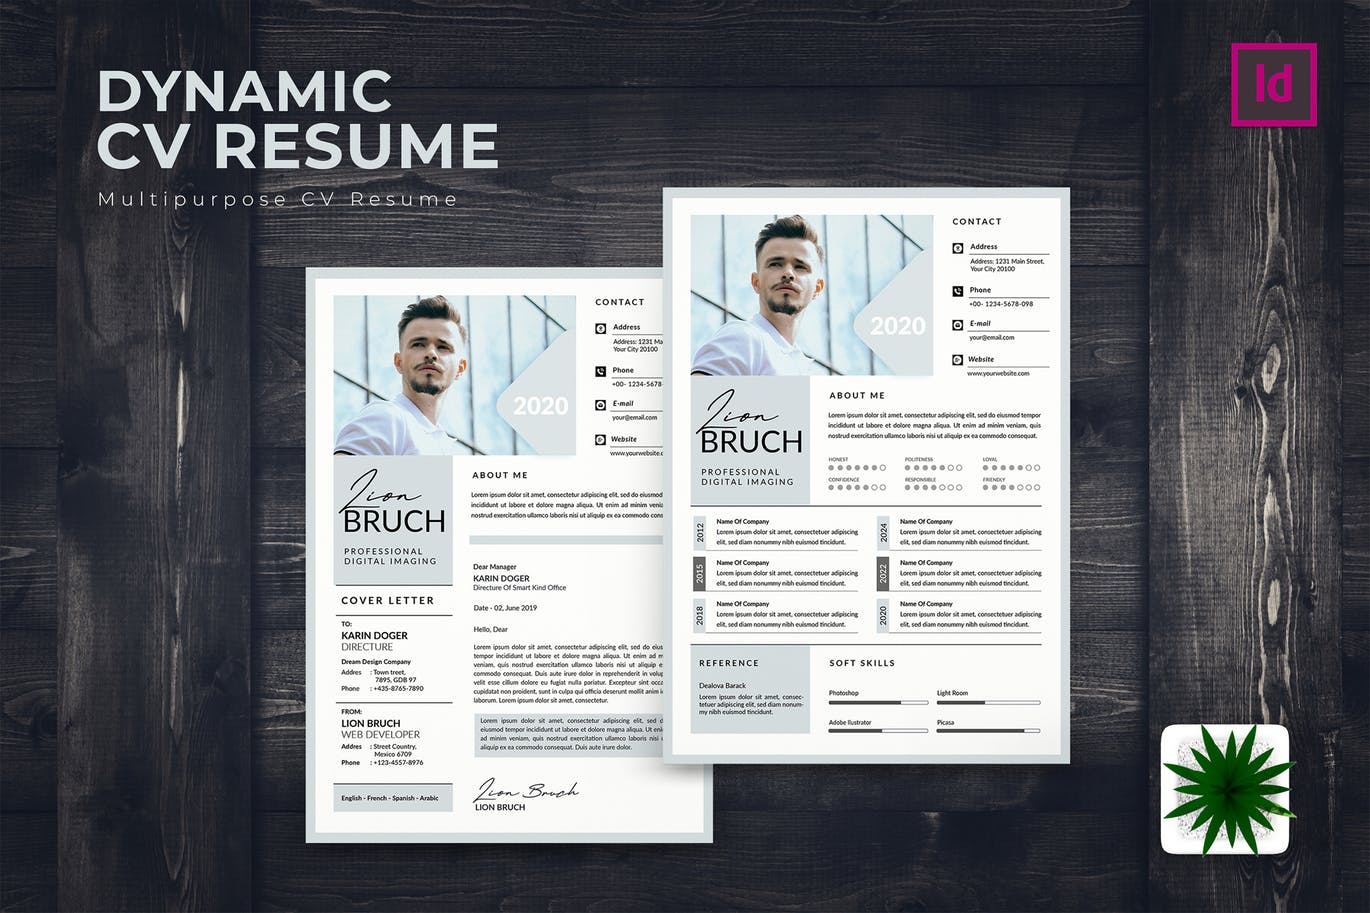 专业图形设计师电子非凡图库精选简历模板 Dynamic CV Resume插图